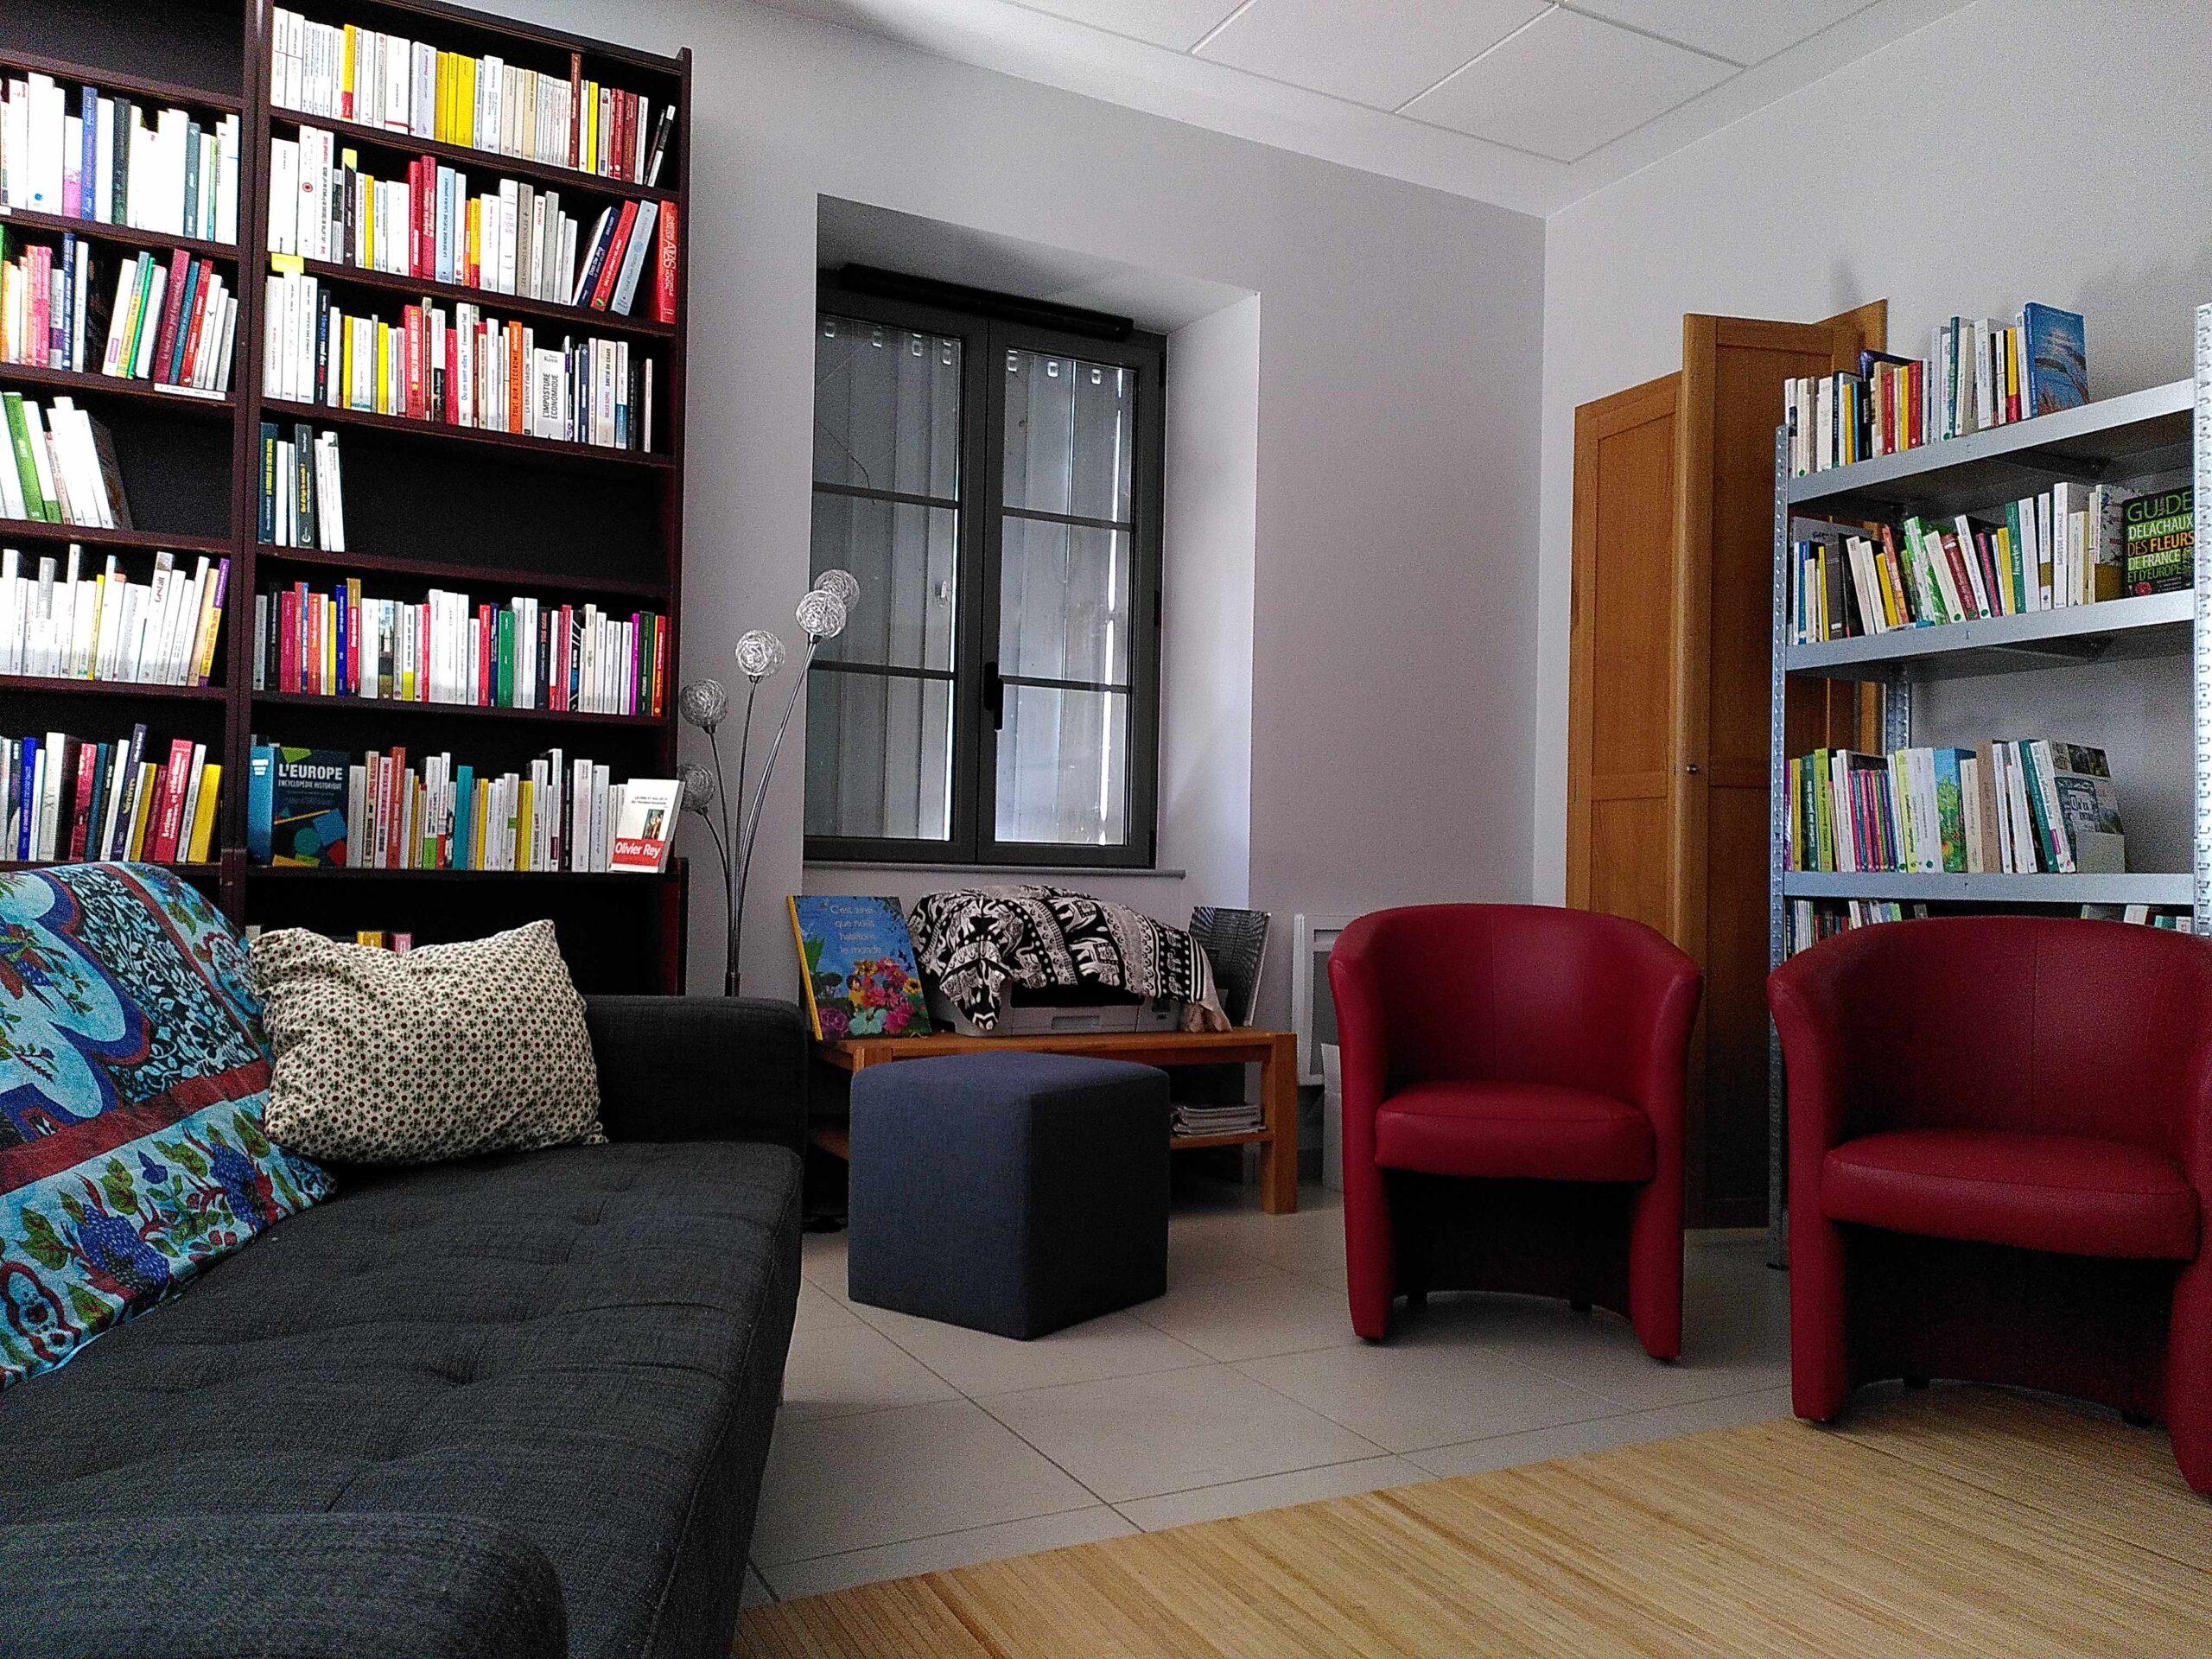 Bibliothèque du Sonneur, on voit un canapé, des fauteuils rouges et des étagères pleines de livres